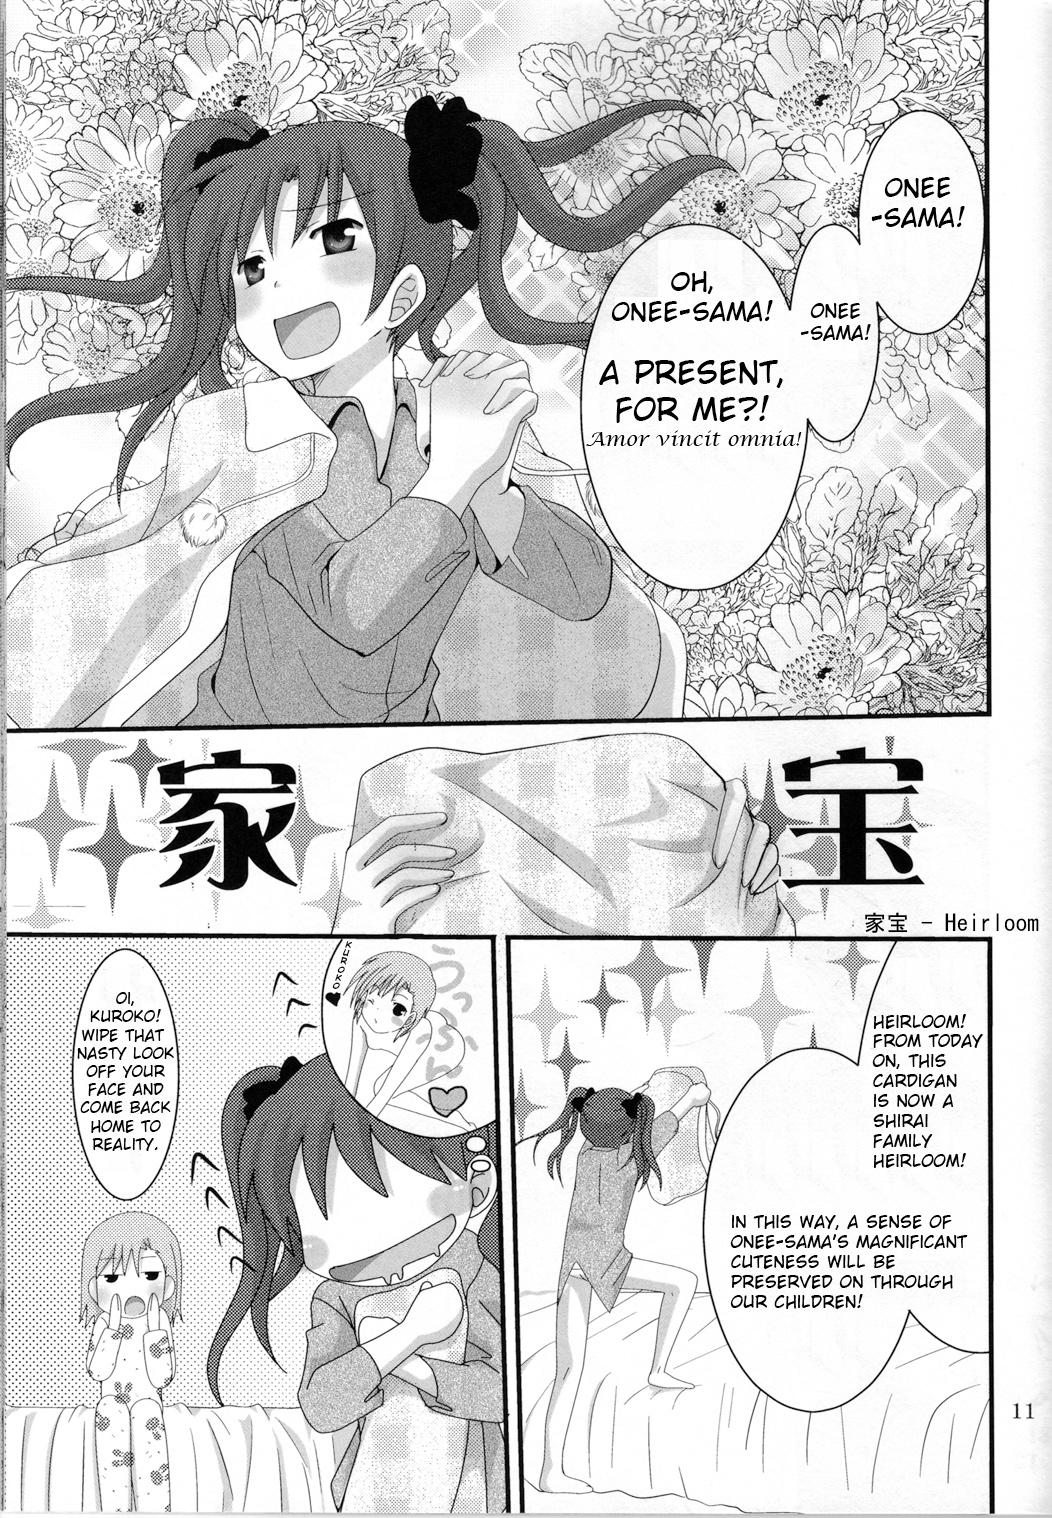 Hot Women Fucking Toaru Seiya no Christmas Eve | A Certain Holy Night - Toaru kagaku no railgun For - Page 11